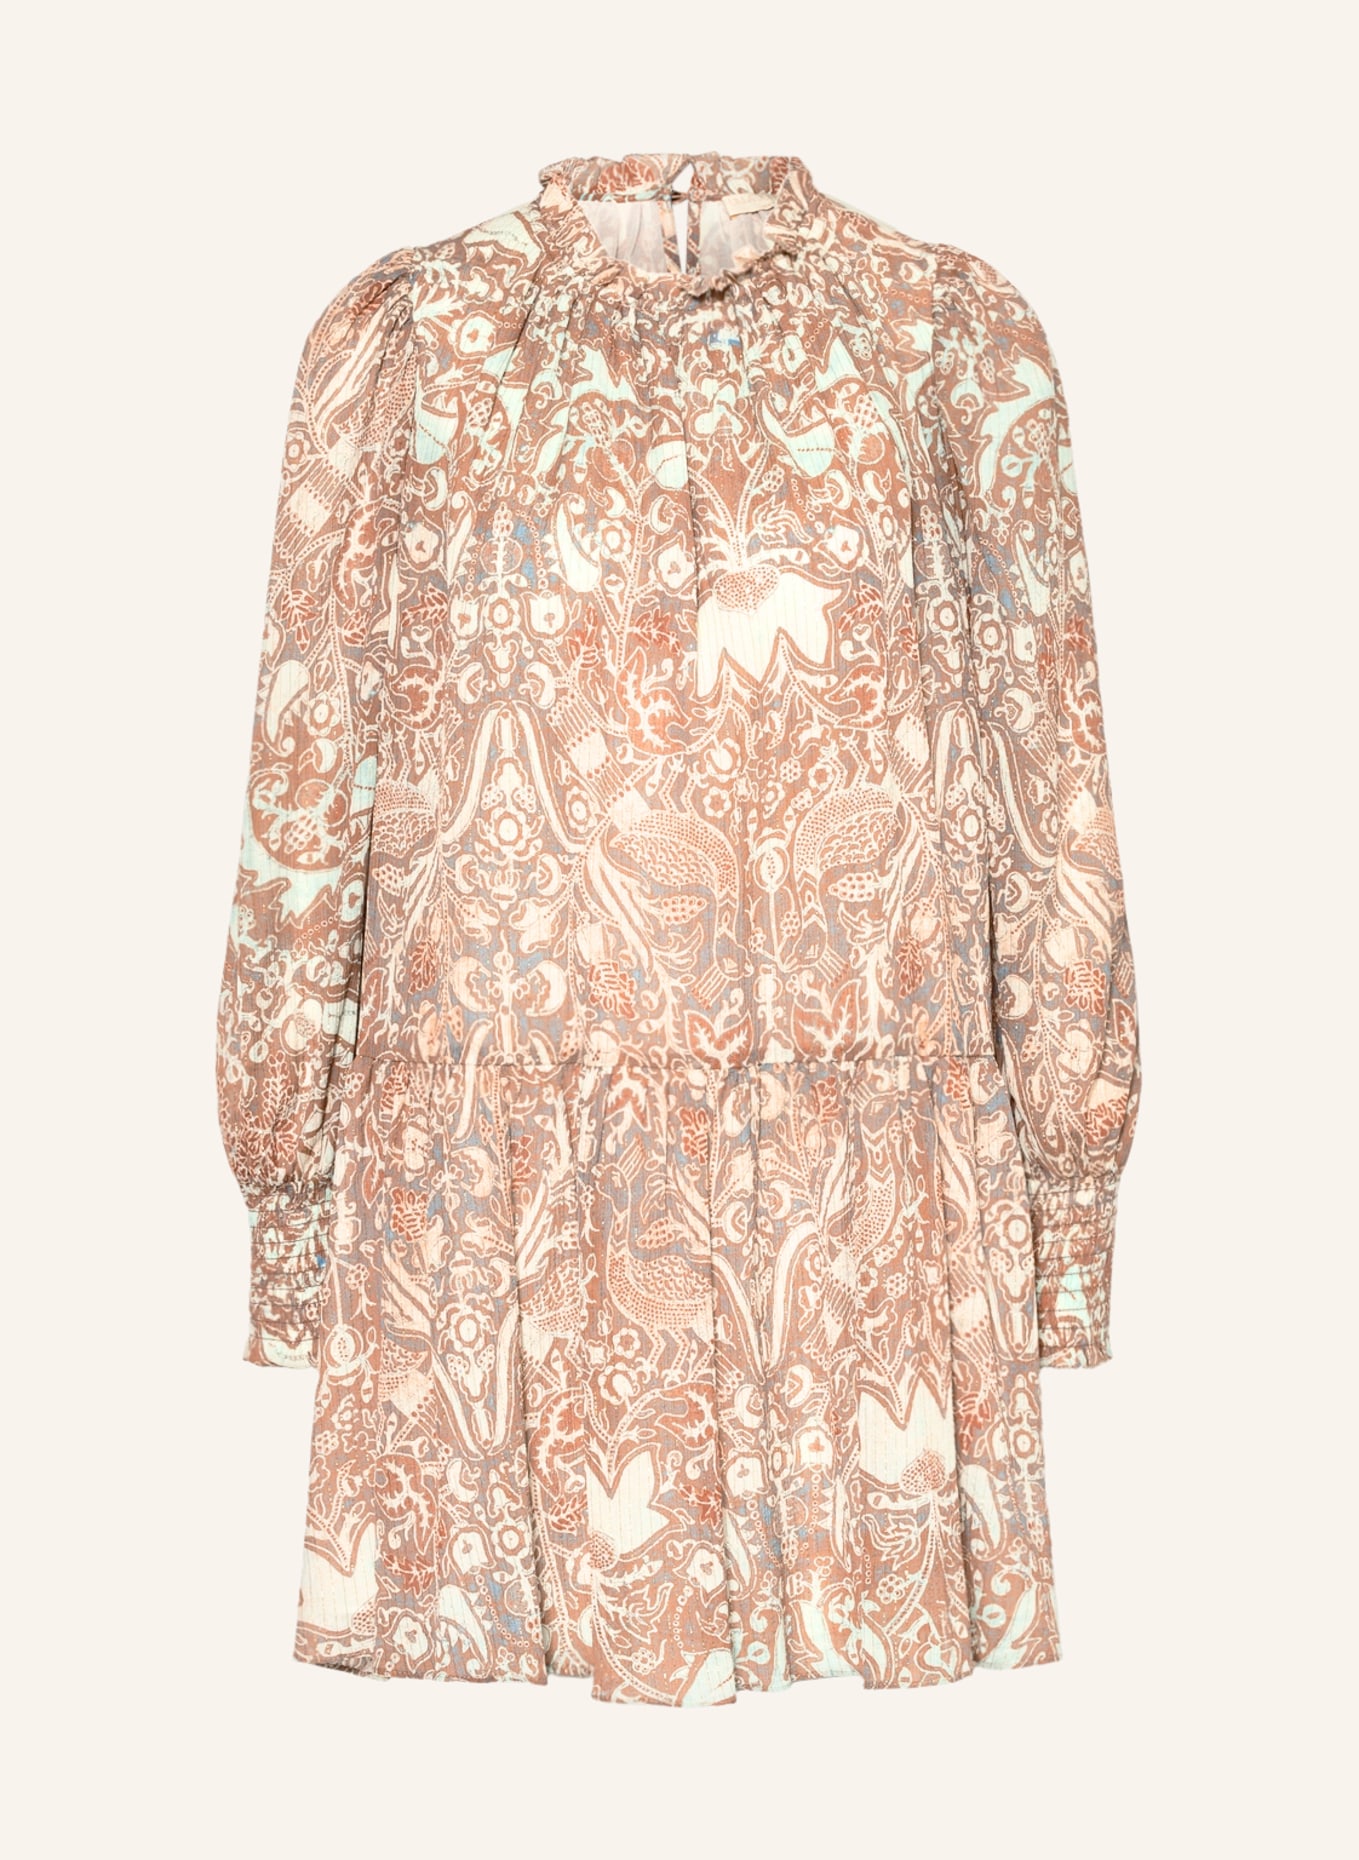 ULLA JOHNSON Kleid MAJA mit Glitzergarn, Farbe: ORANGE/ MINT (Bild 1)